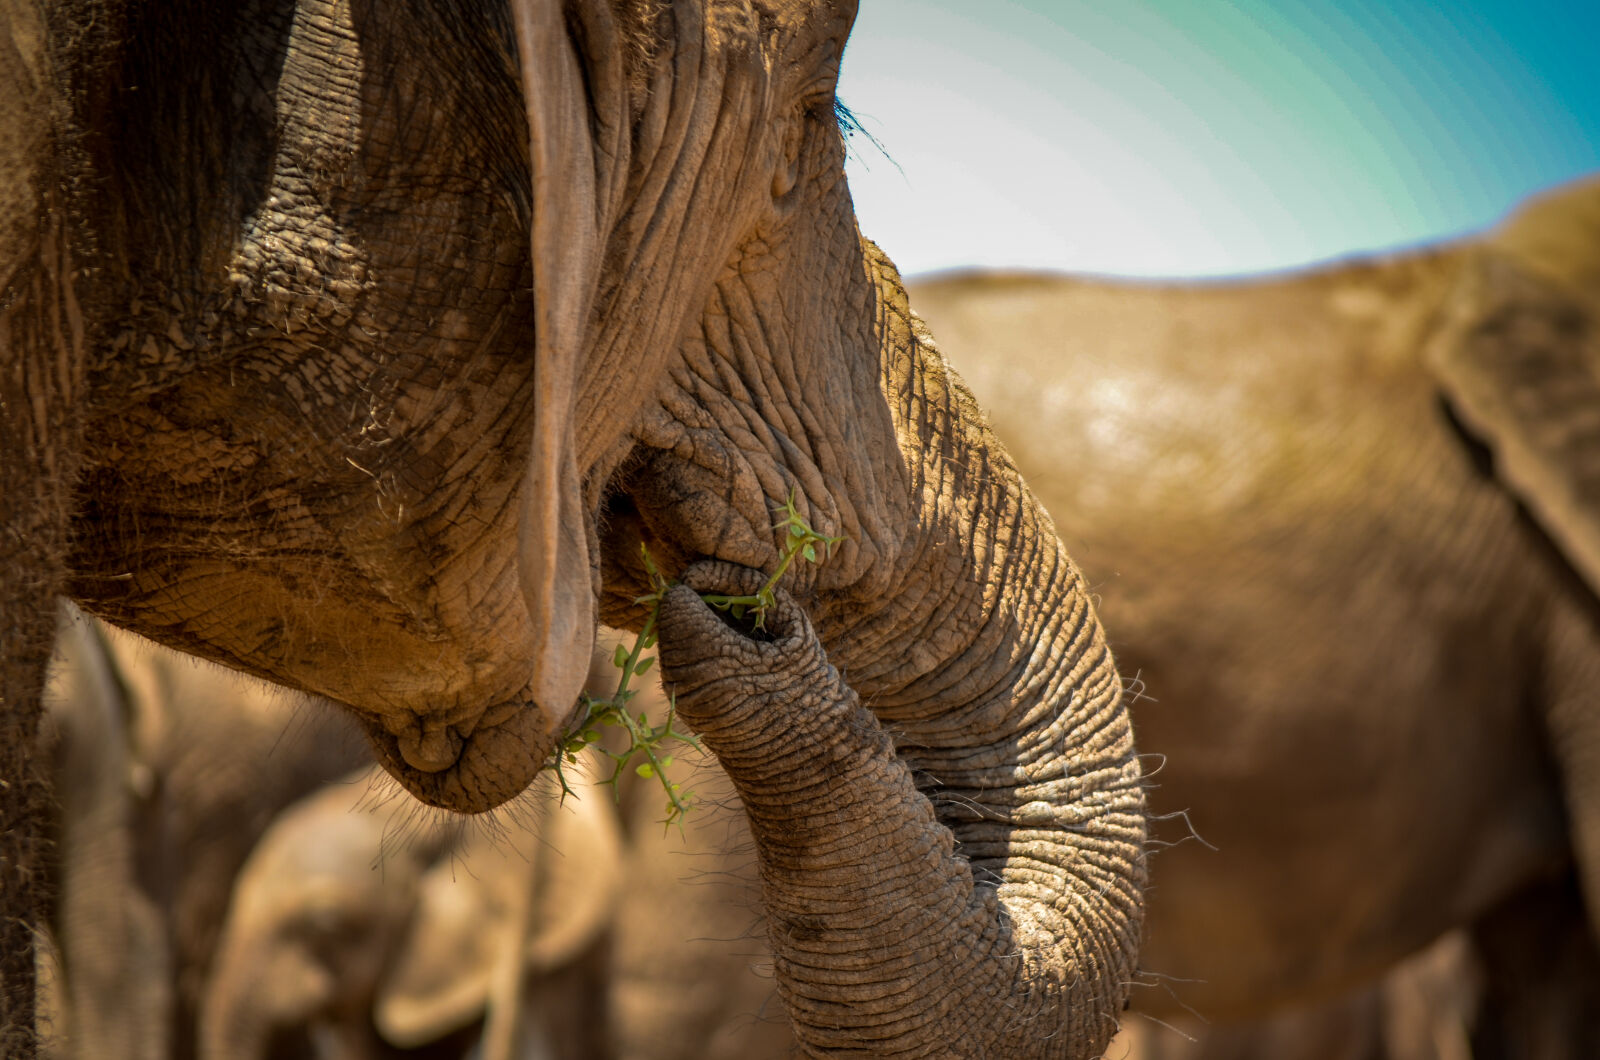 Nikon AF-S DX Nikkor 55-200mm F4-5.6G VR sample photo. Close up elephant trunk photography